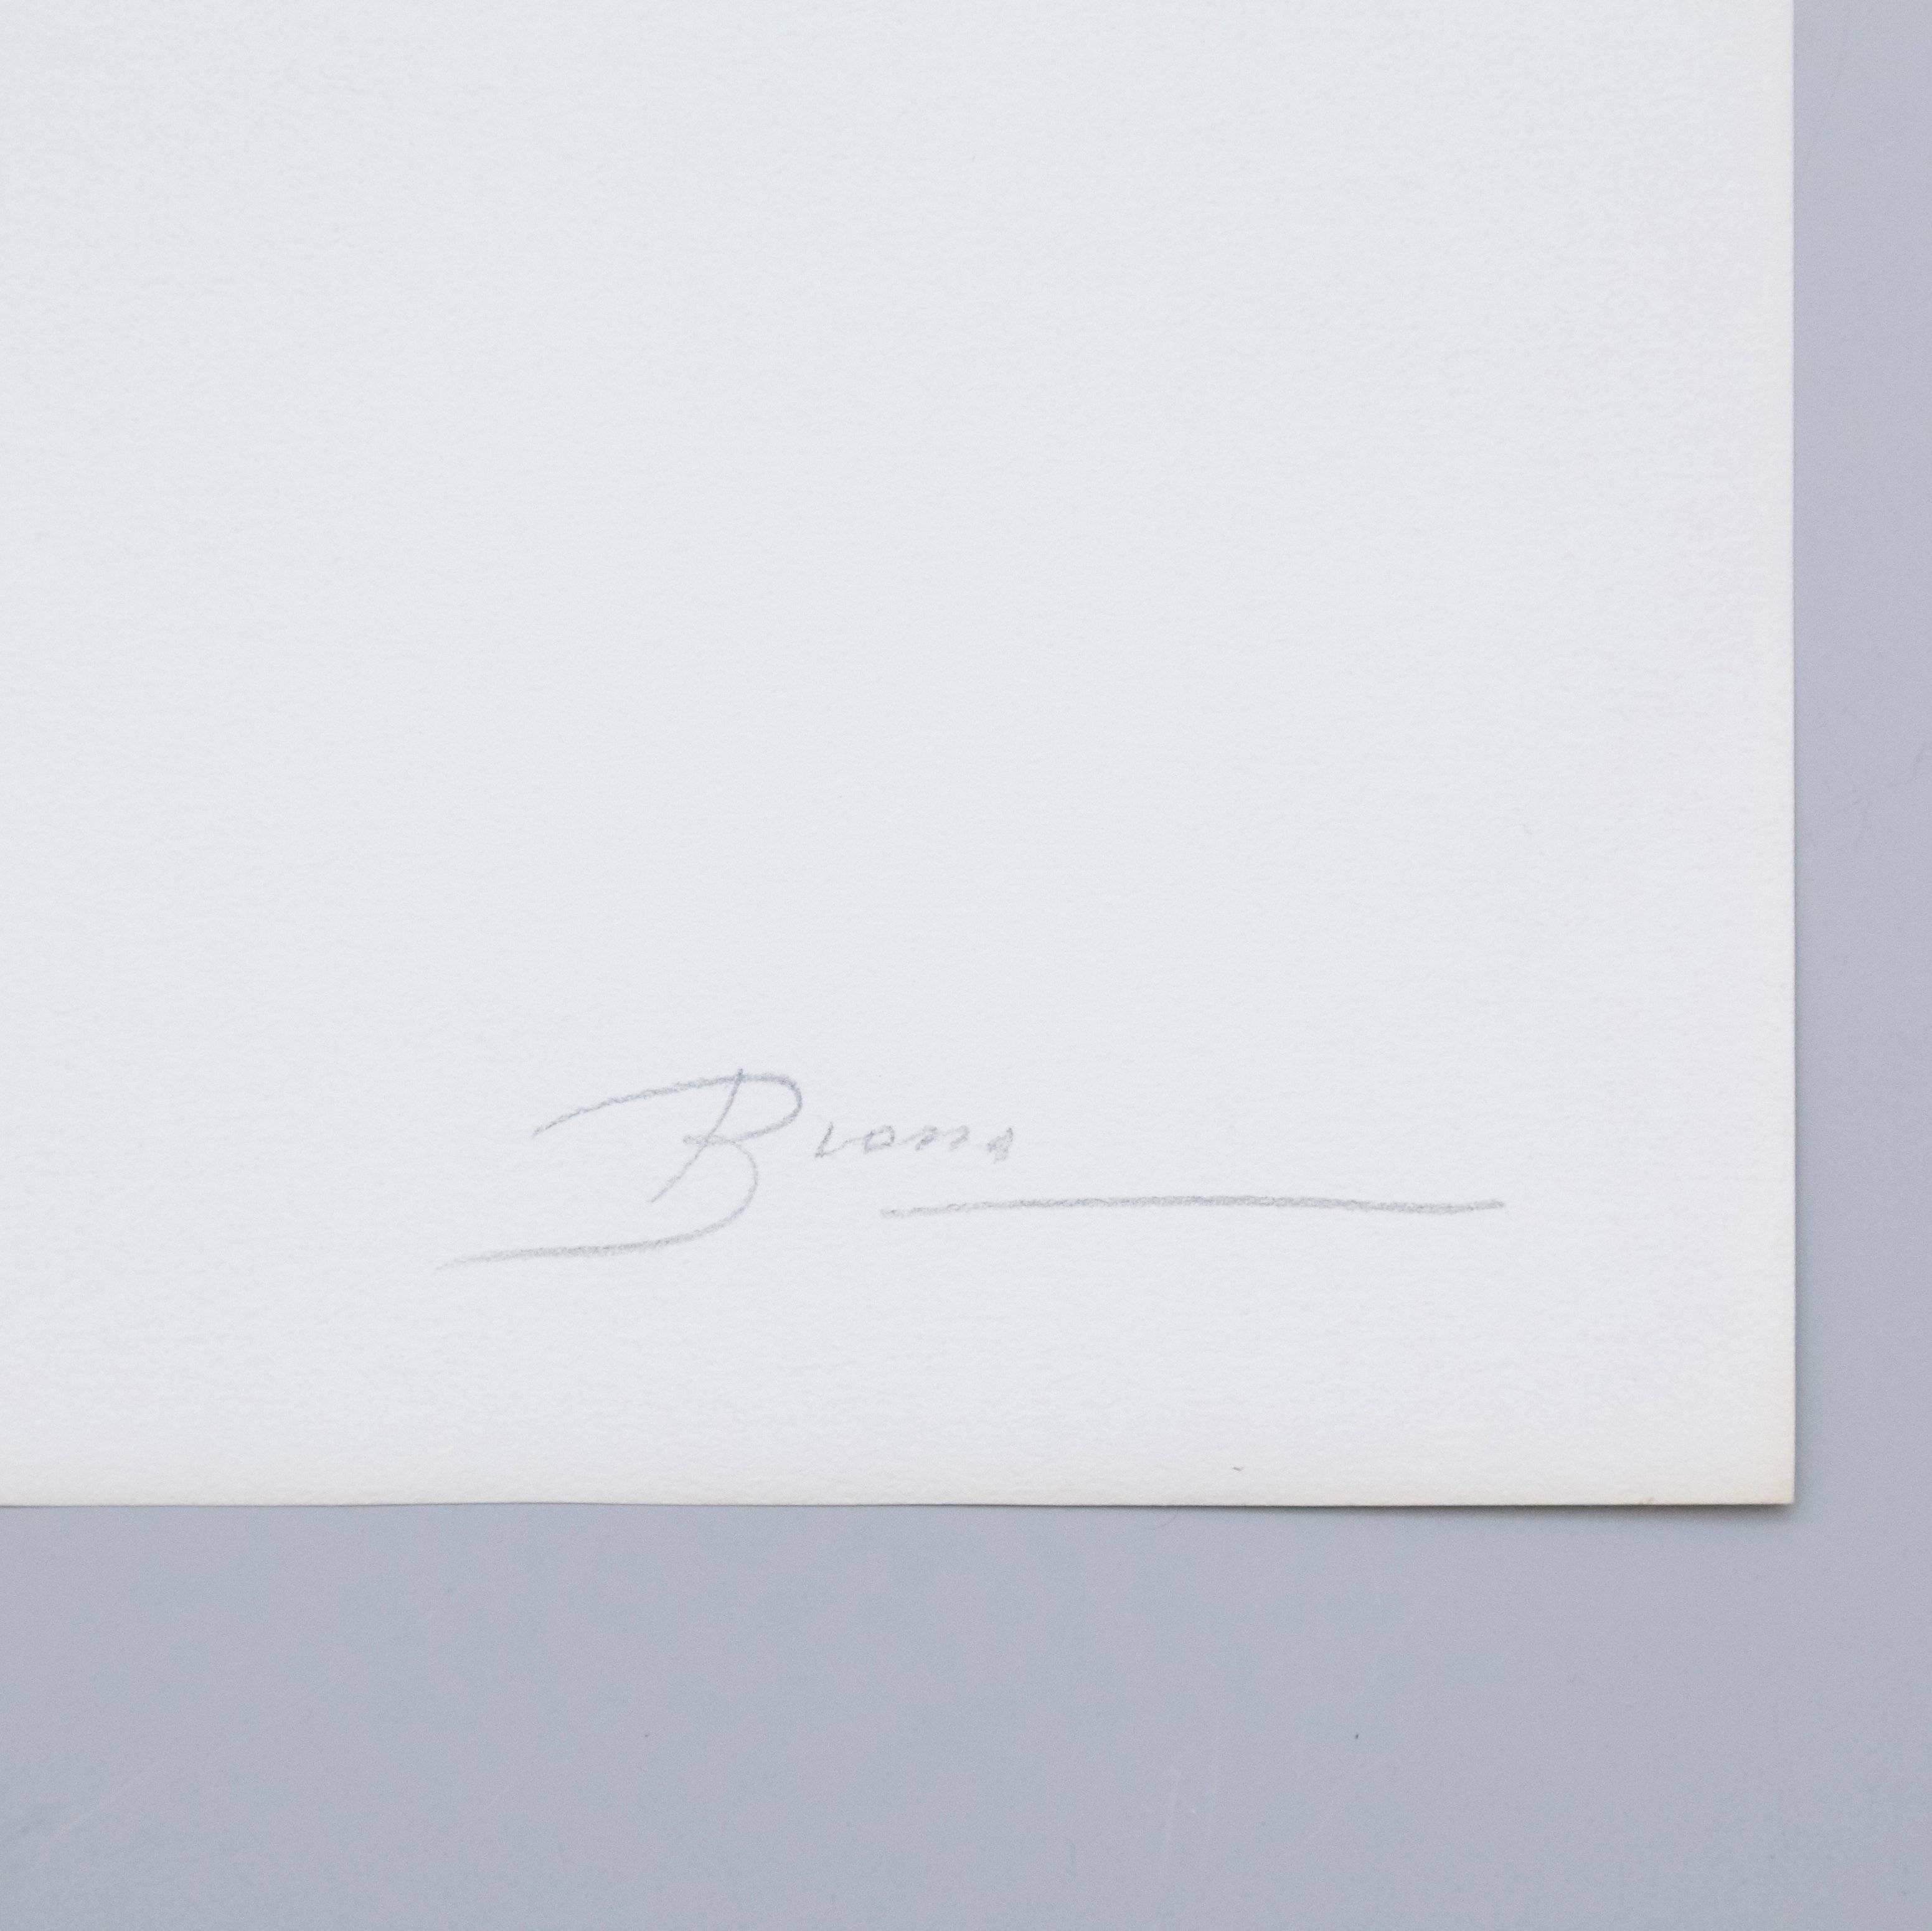 Visuelles Gedicht von Joan Brossa, um 1989.

Grafischer Druck. Lithographie auf Guarro-Papier. Limitierte Auflage (50). Signiert und nummeriert. Jahr: 1989

Maße: Breite 38 cm (15 Zoll)
Höhe 50 cm (20 in)

Joan Brossa - Barcelona, Spanien,